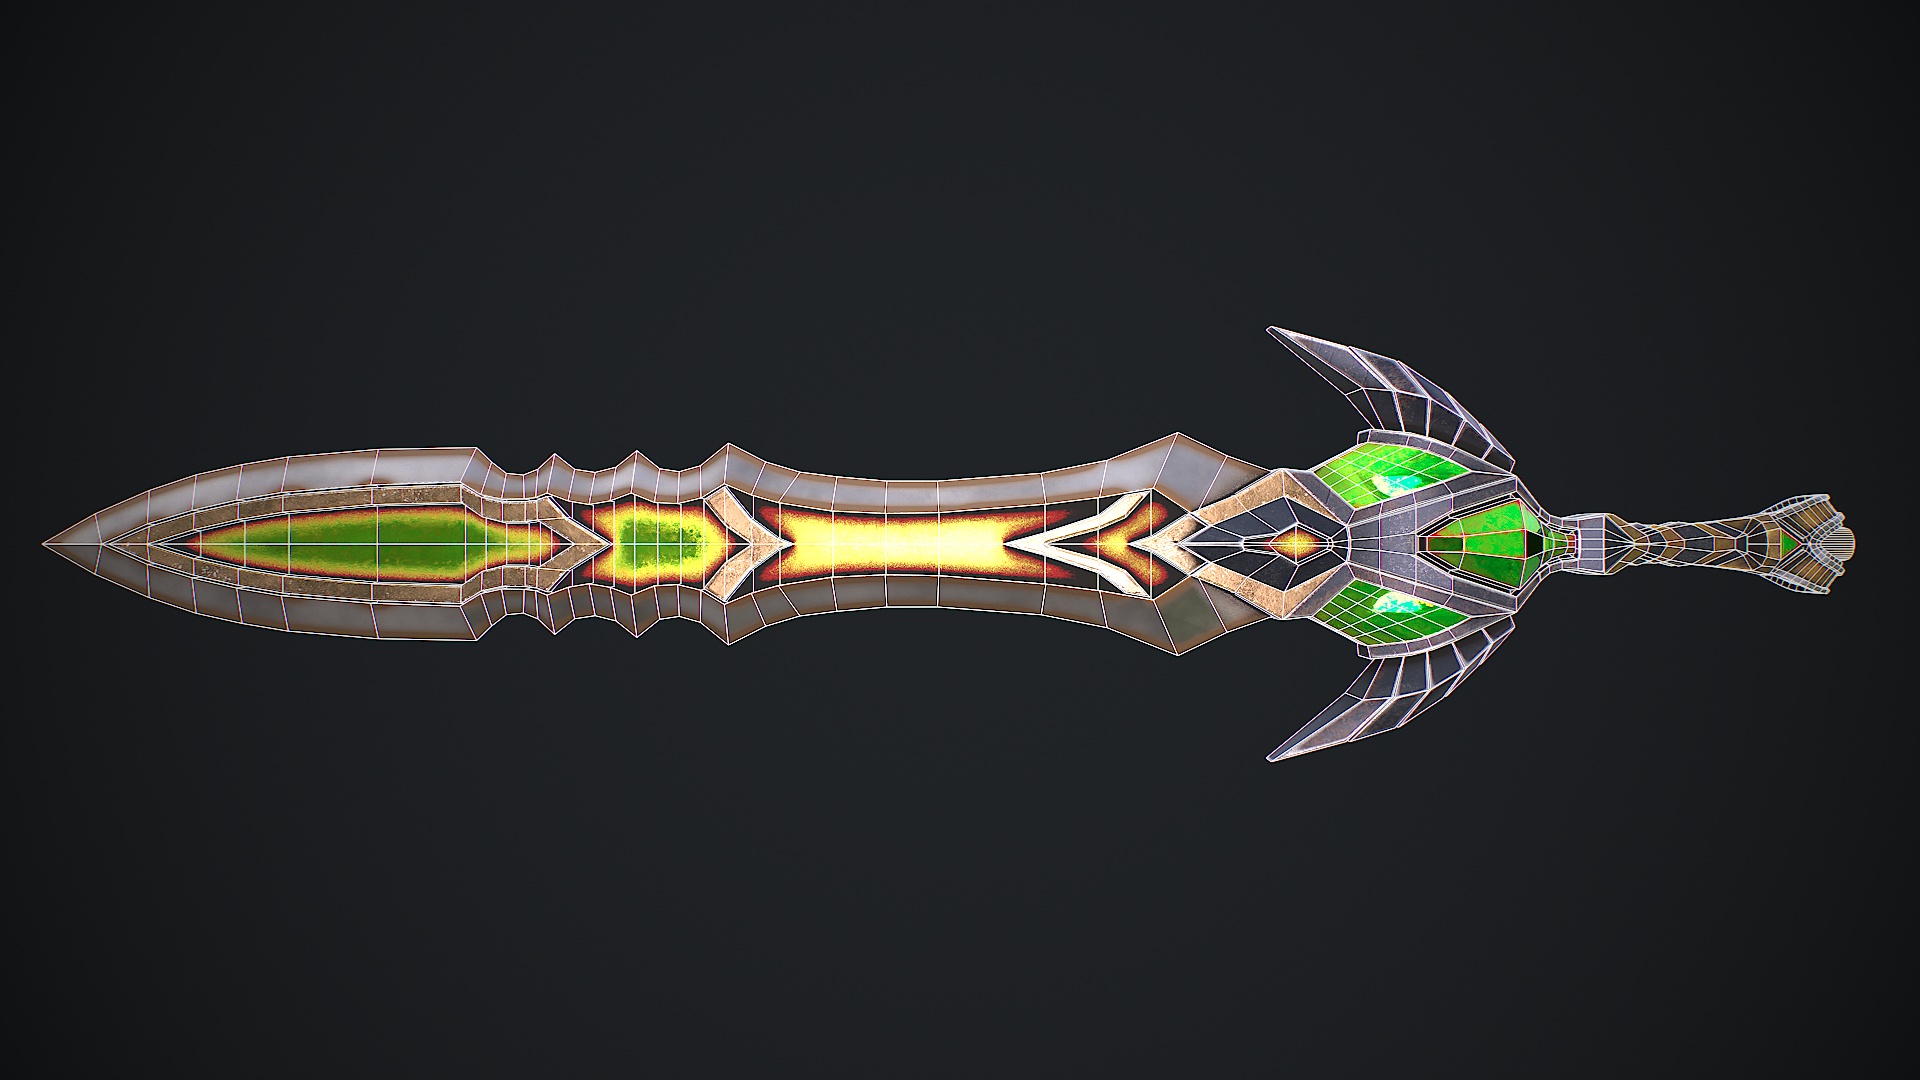 1.16/1.12][Forge] Cyan Warrior Swords Mod v.3.0 (+30 Swords